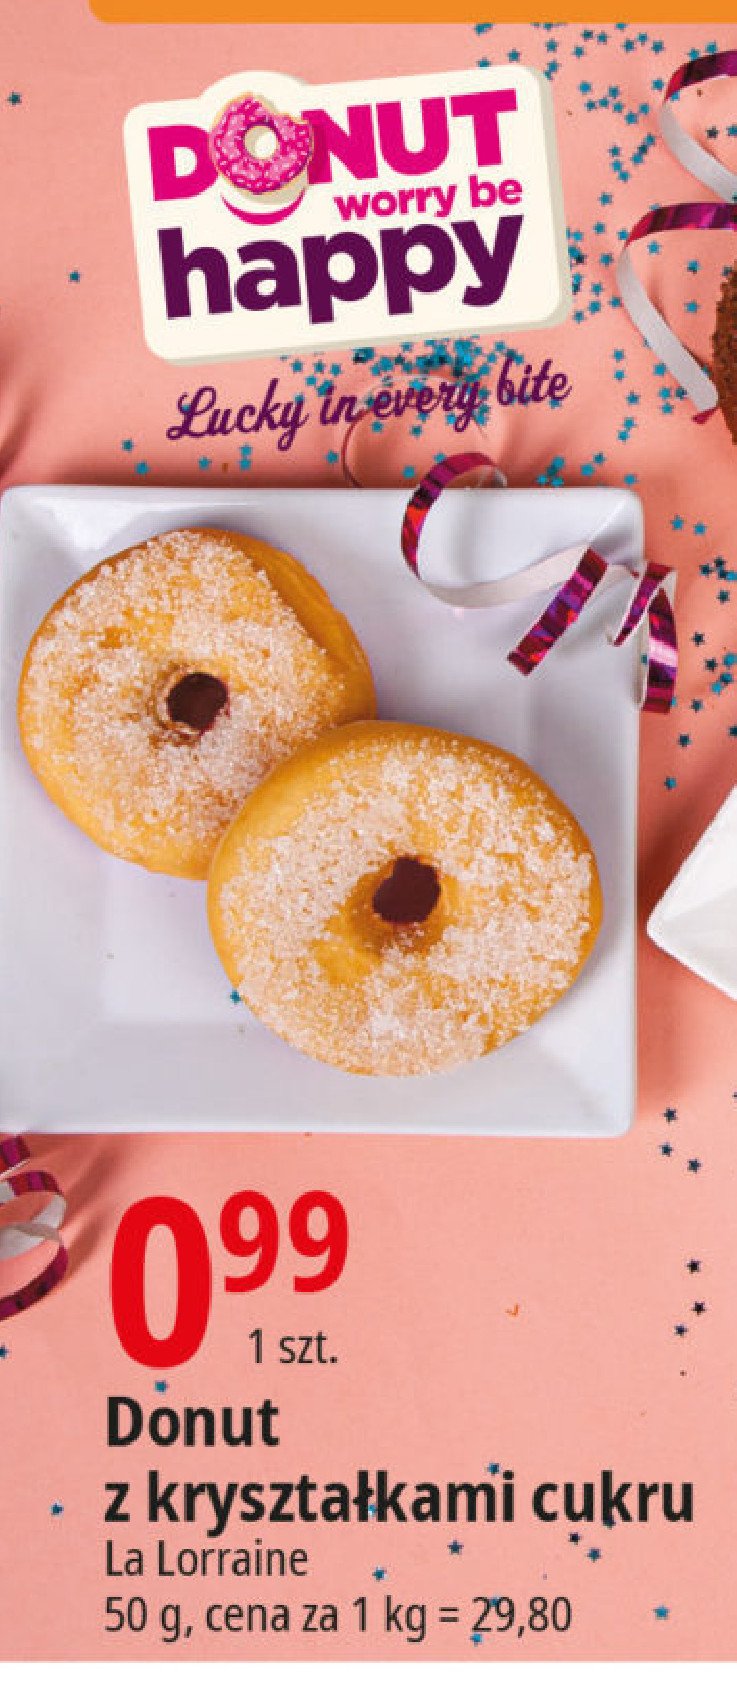 Donut z kryształkami cukru La lorraine promocja